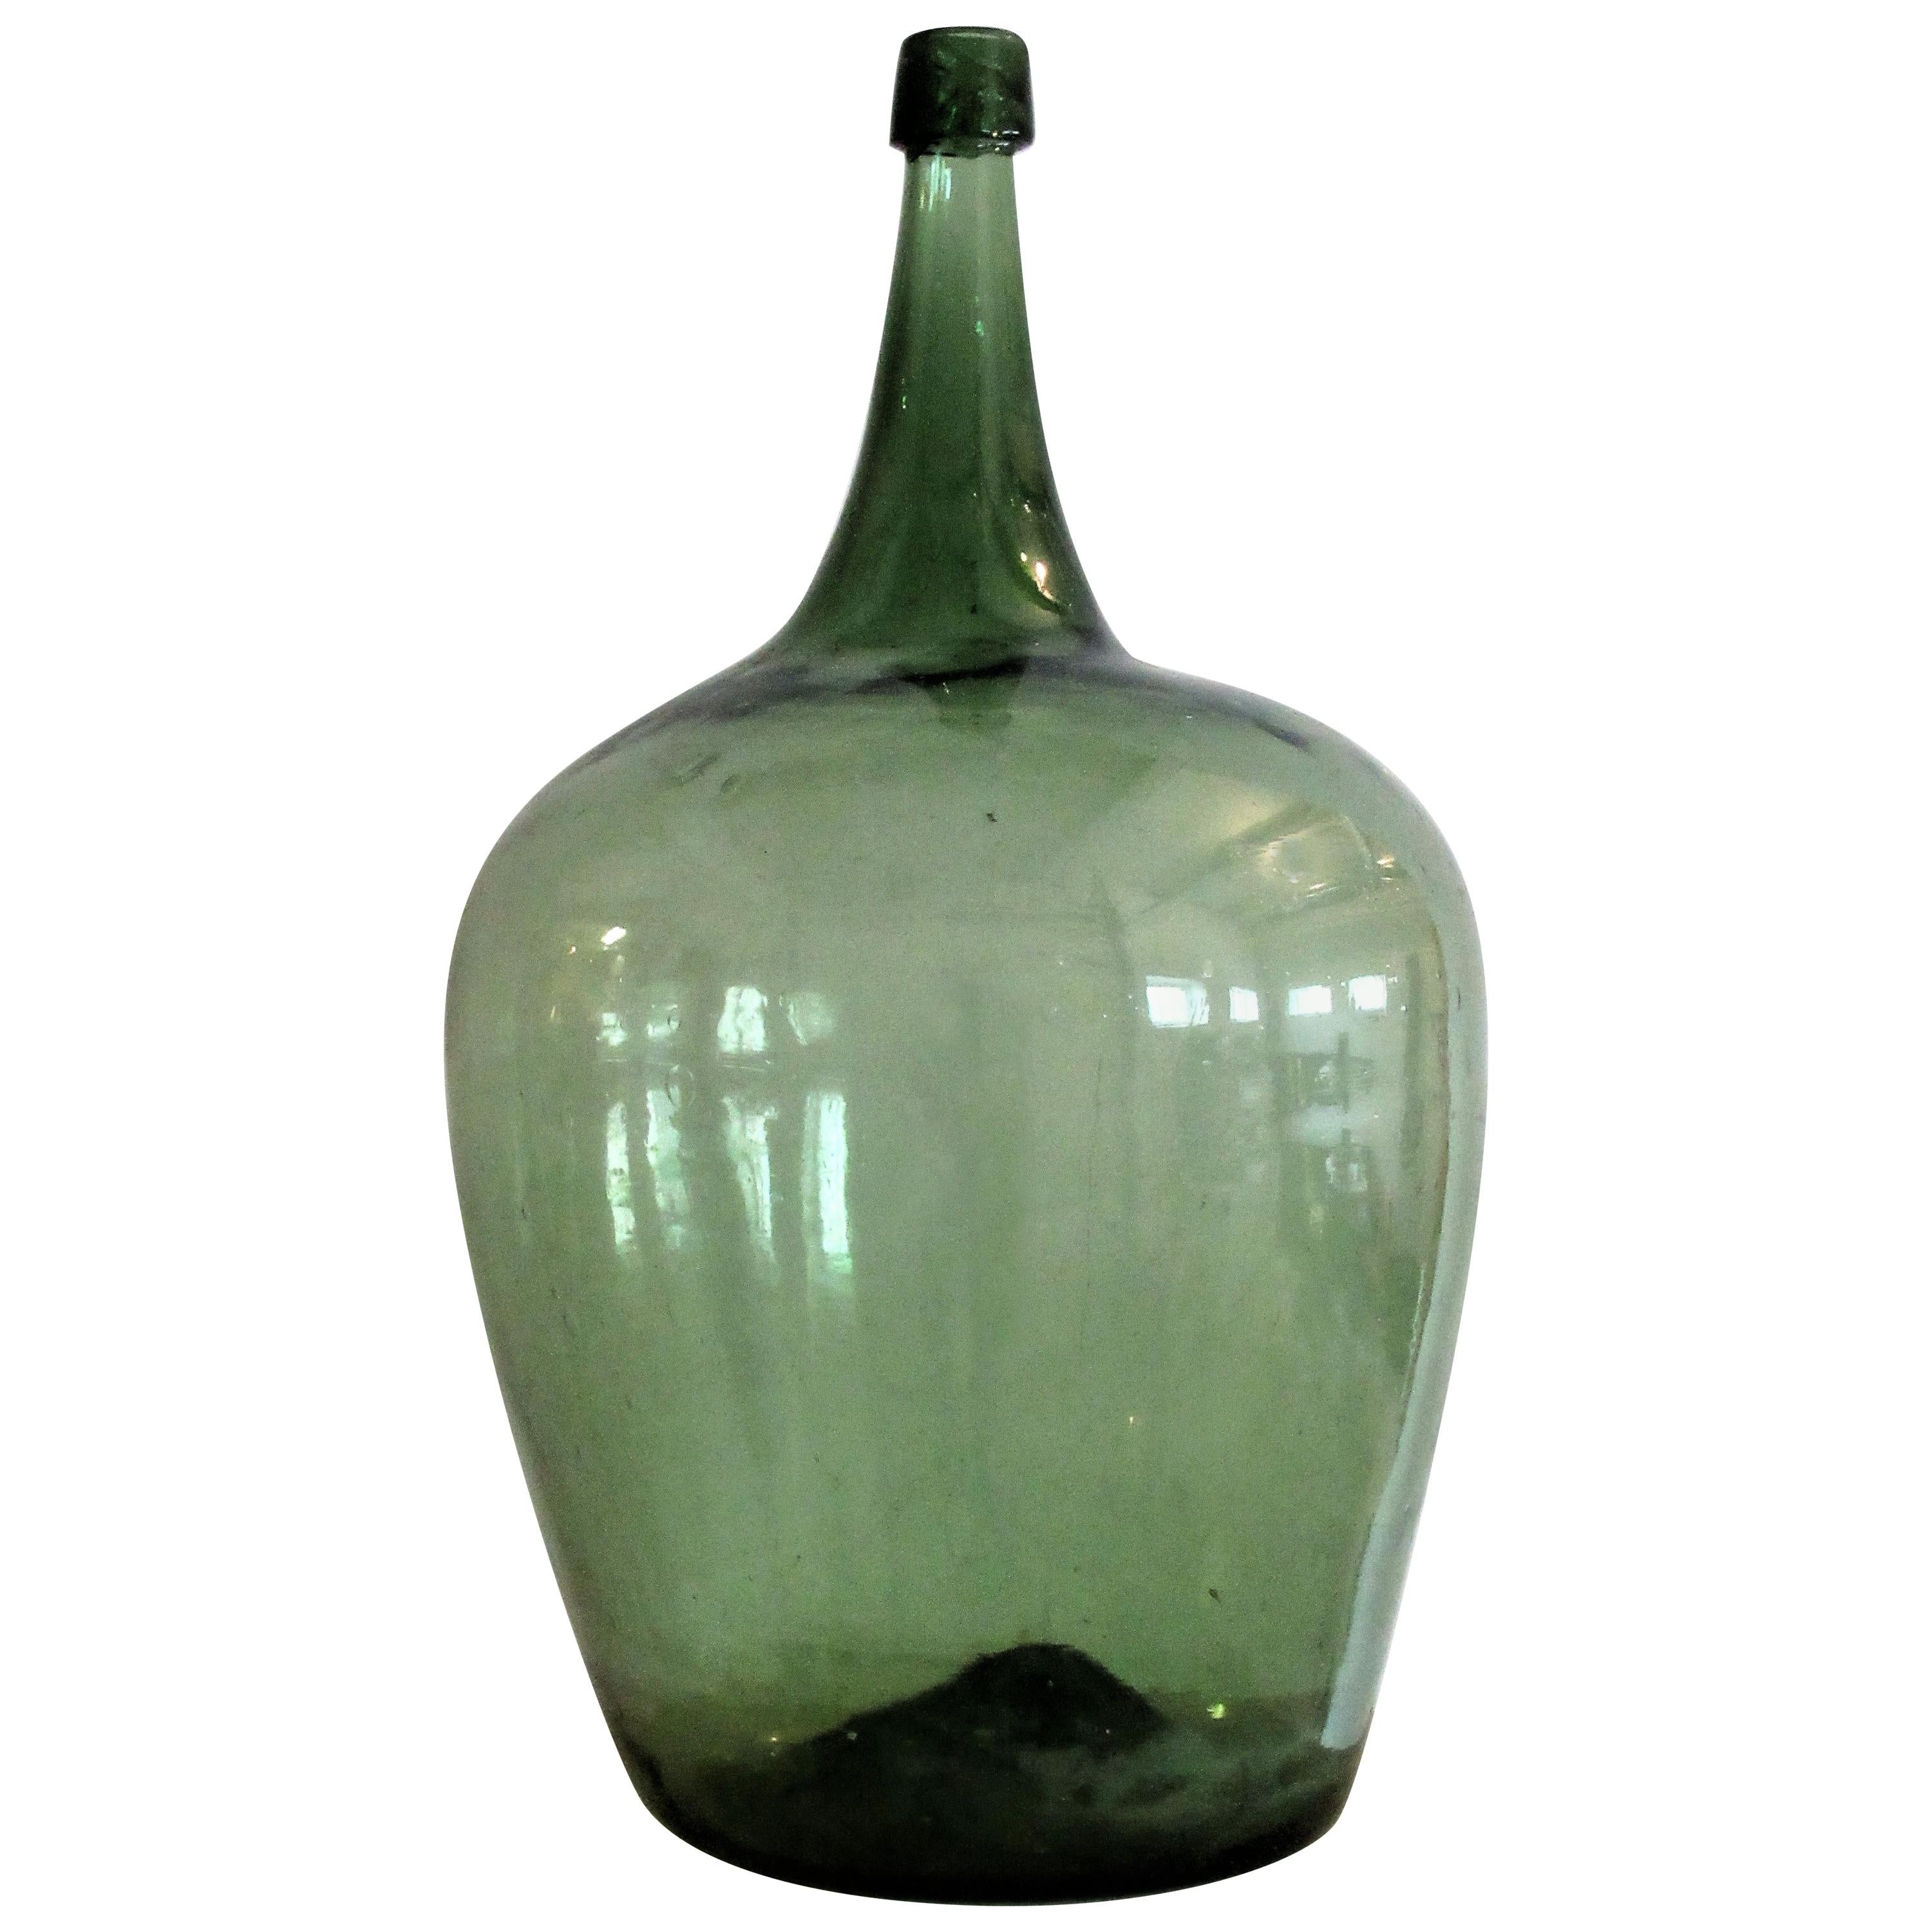 Early Antique American Blown Glass Green Demijohn Bottle